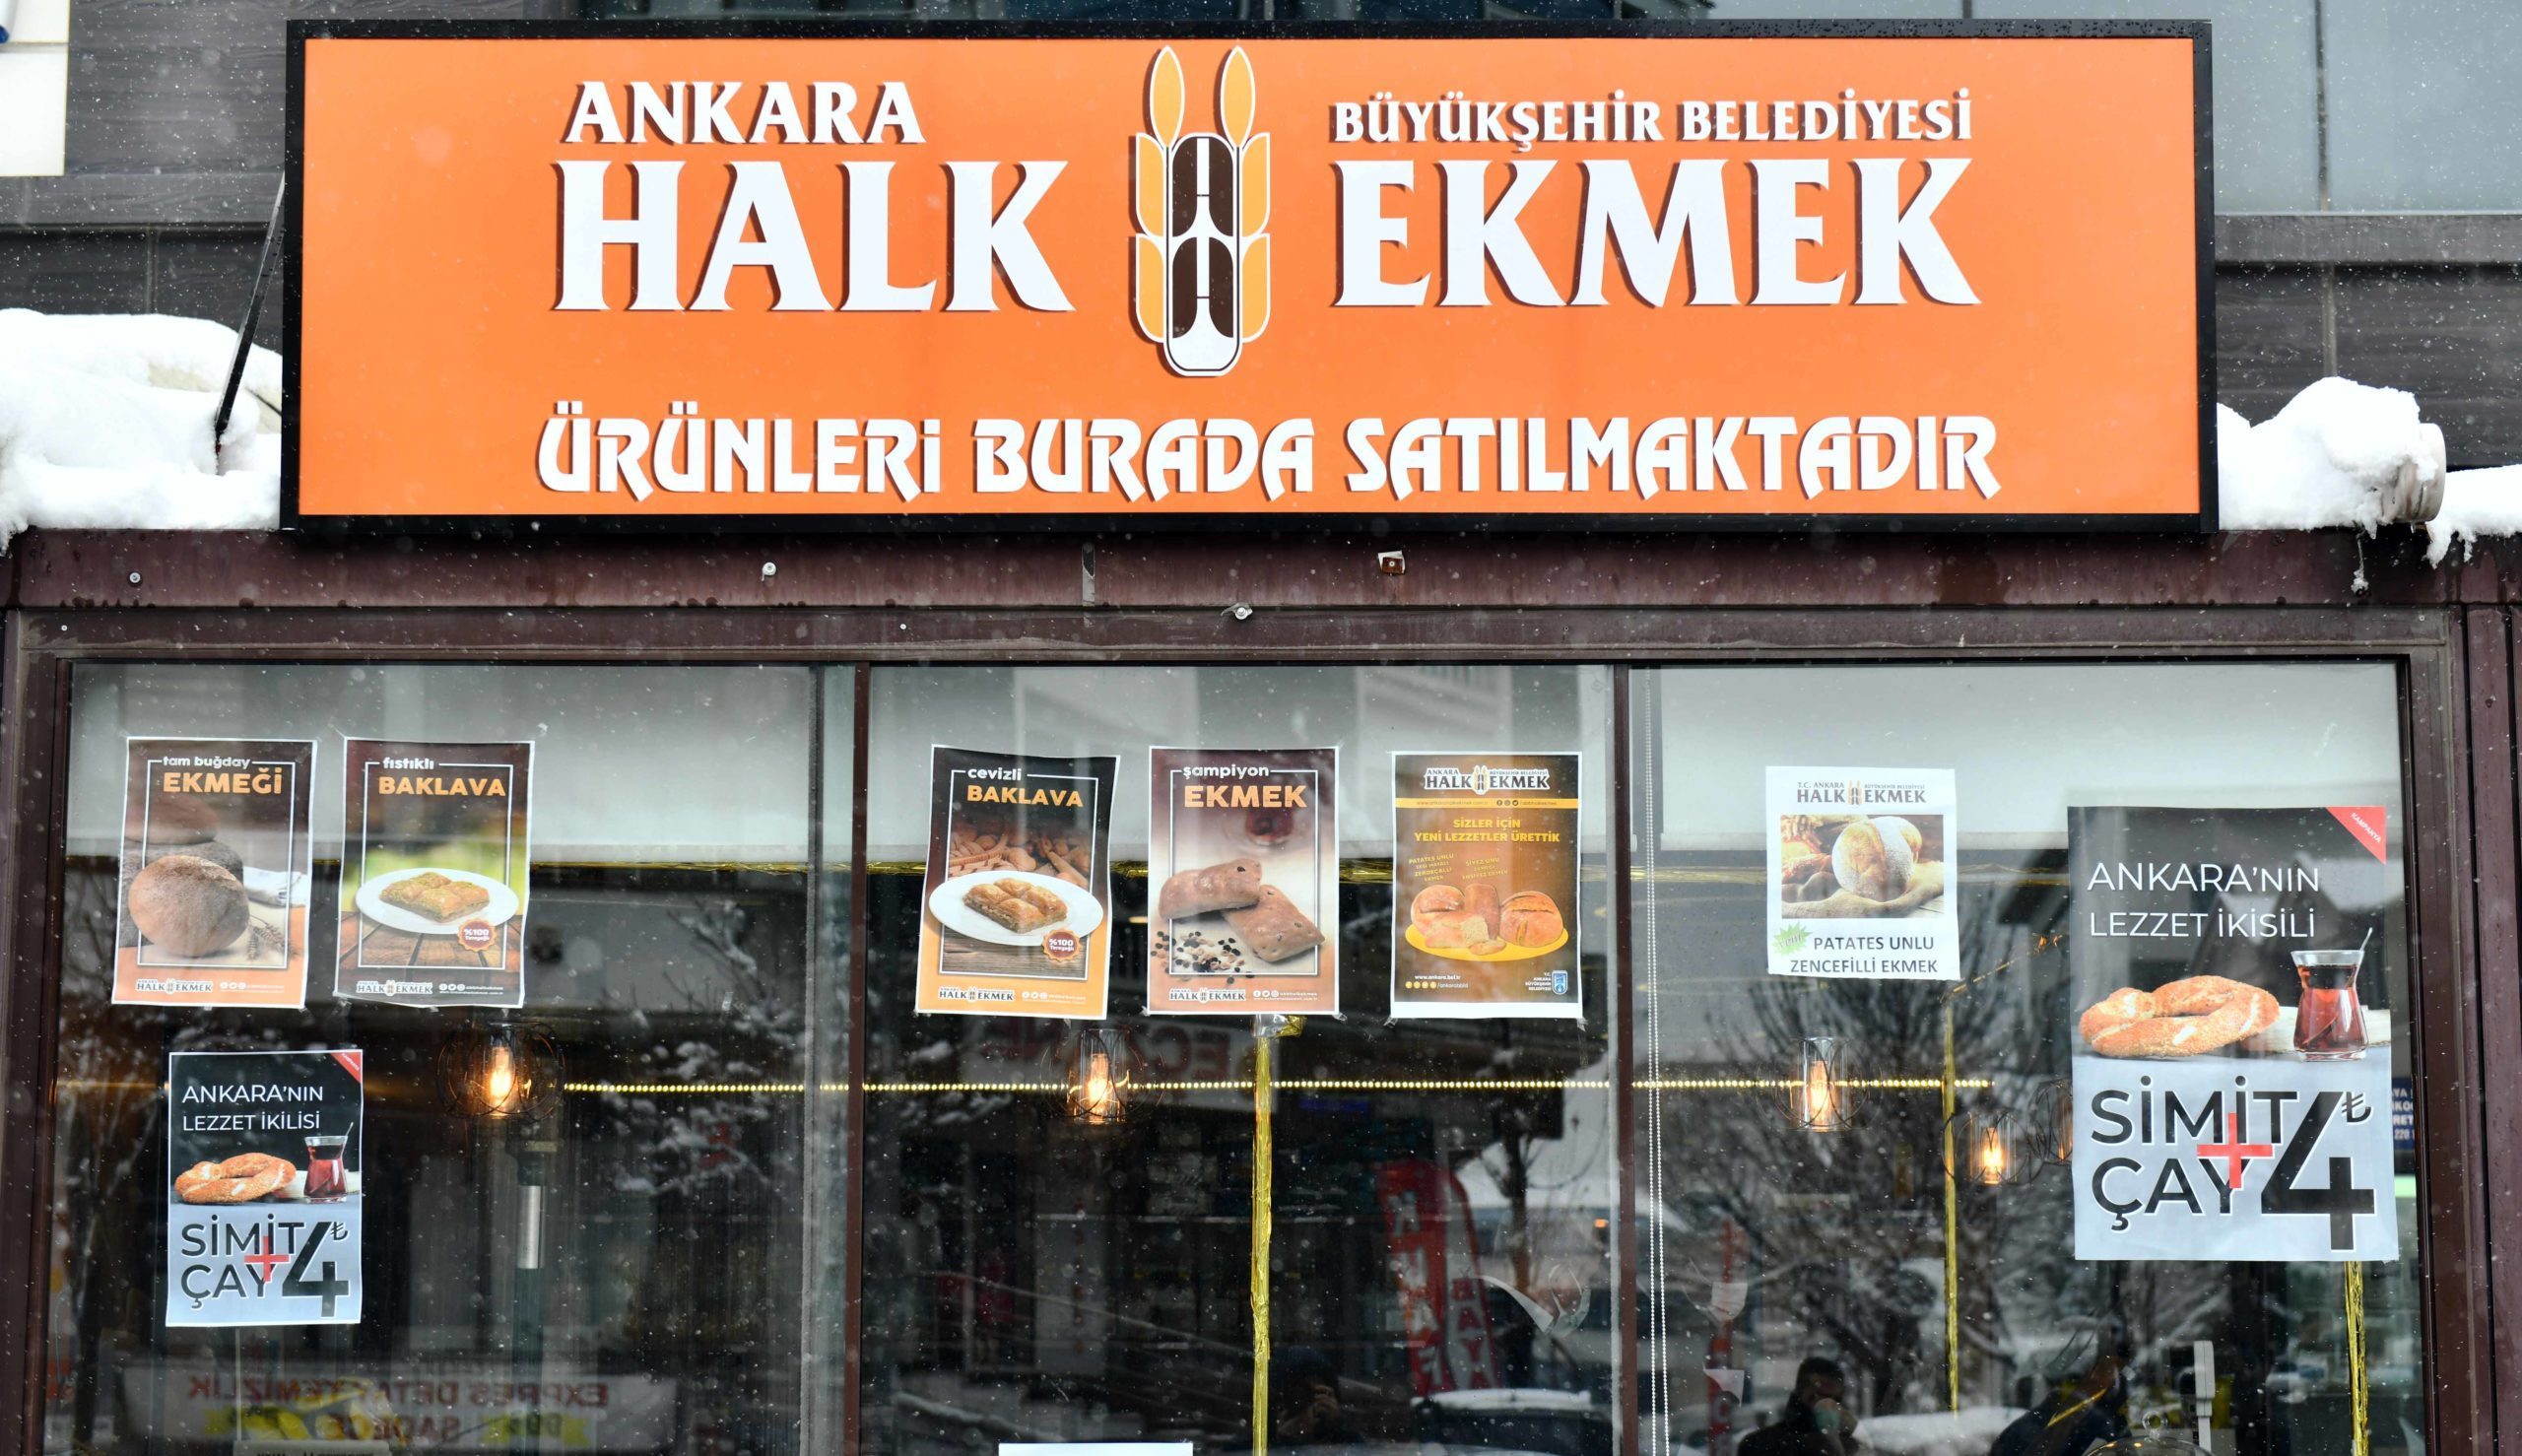  Ankara’da Halk Ekmek Fabrikası ile Bayilik Uygulaması Başladı